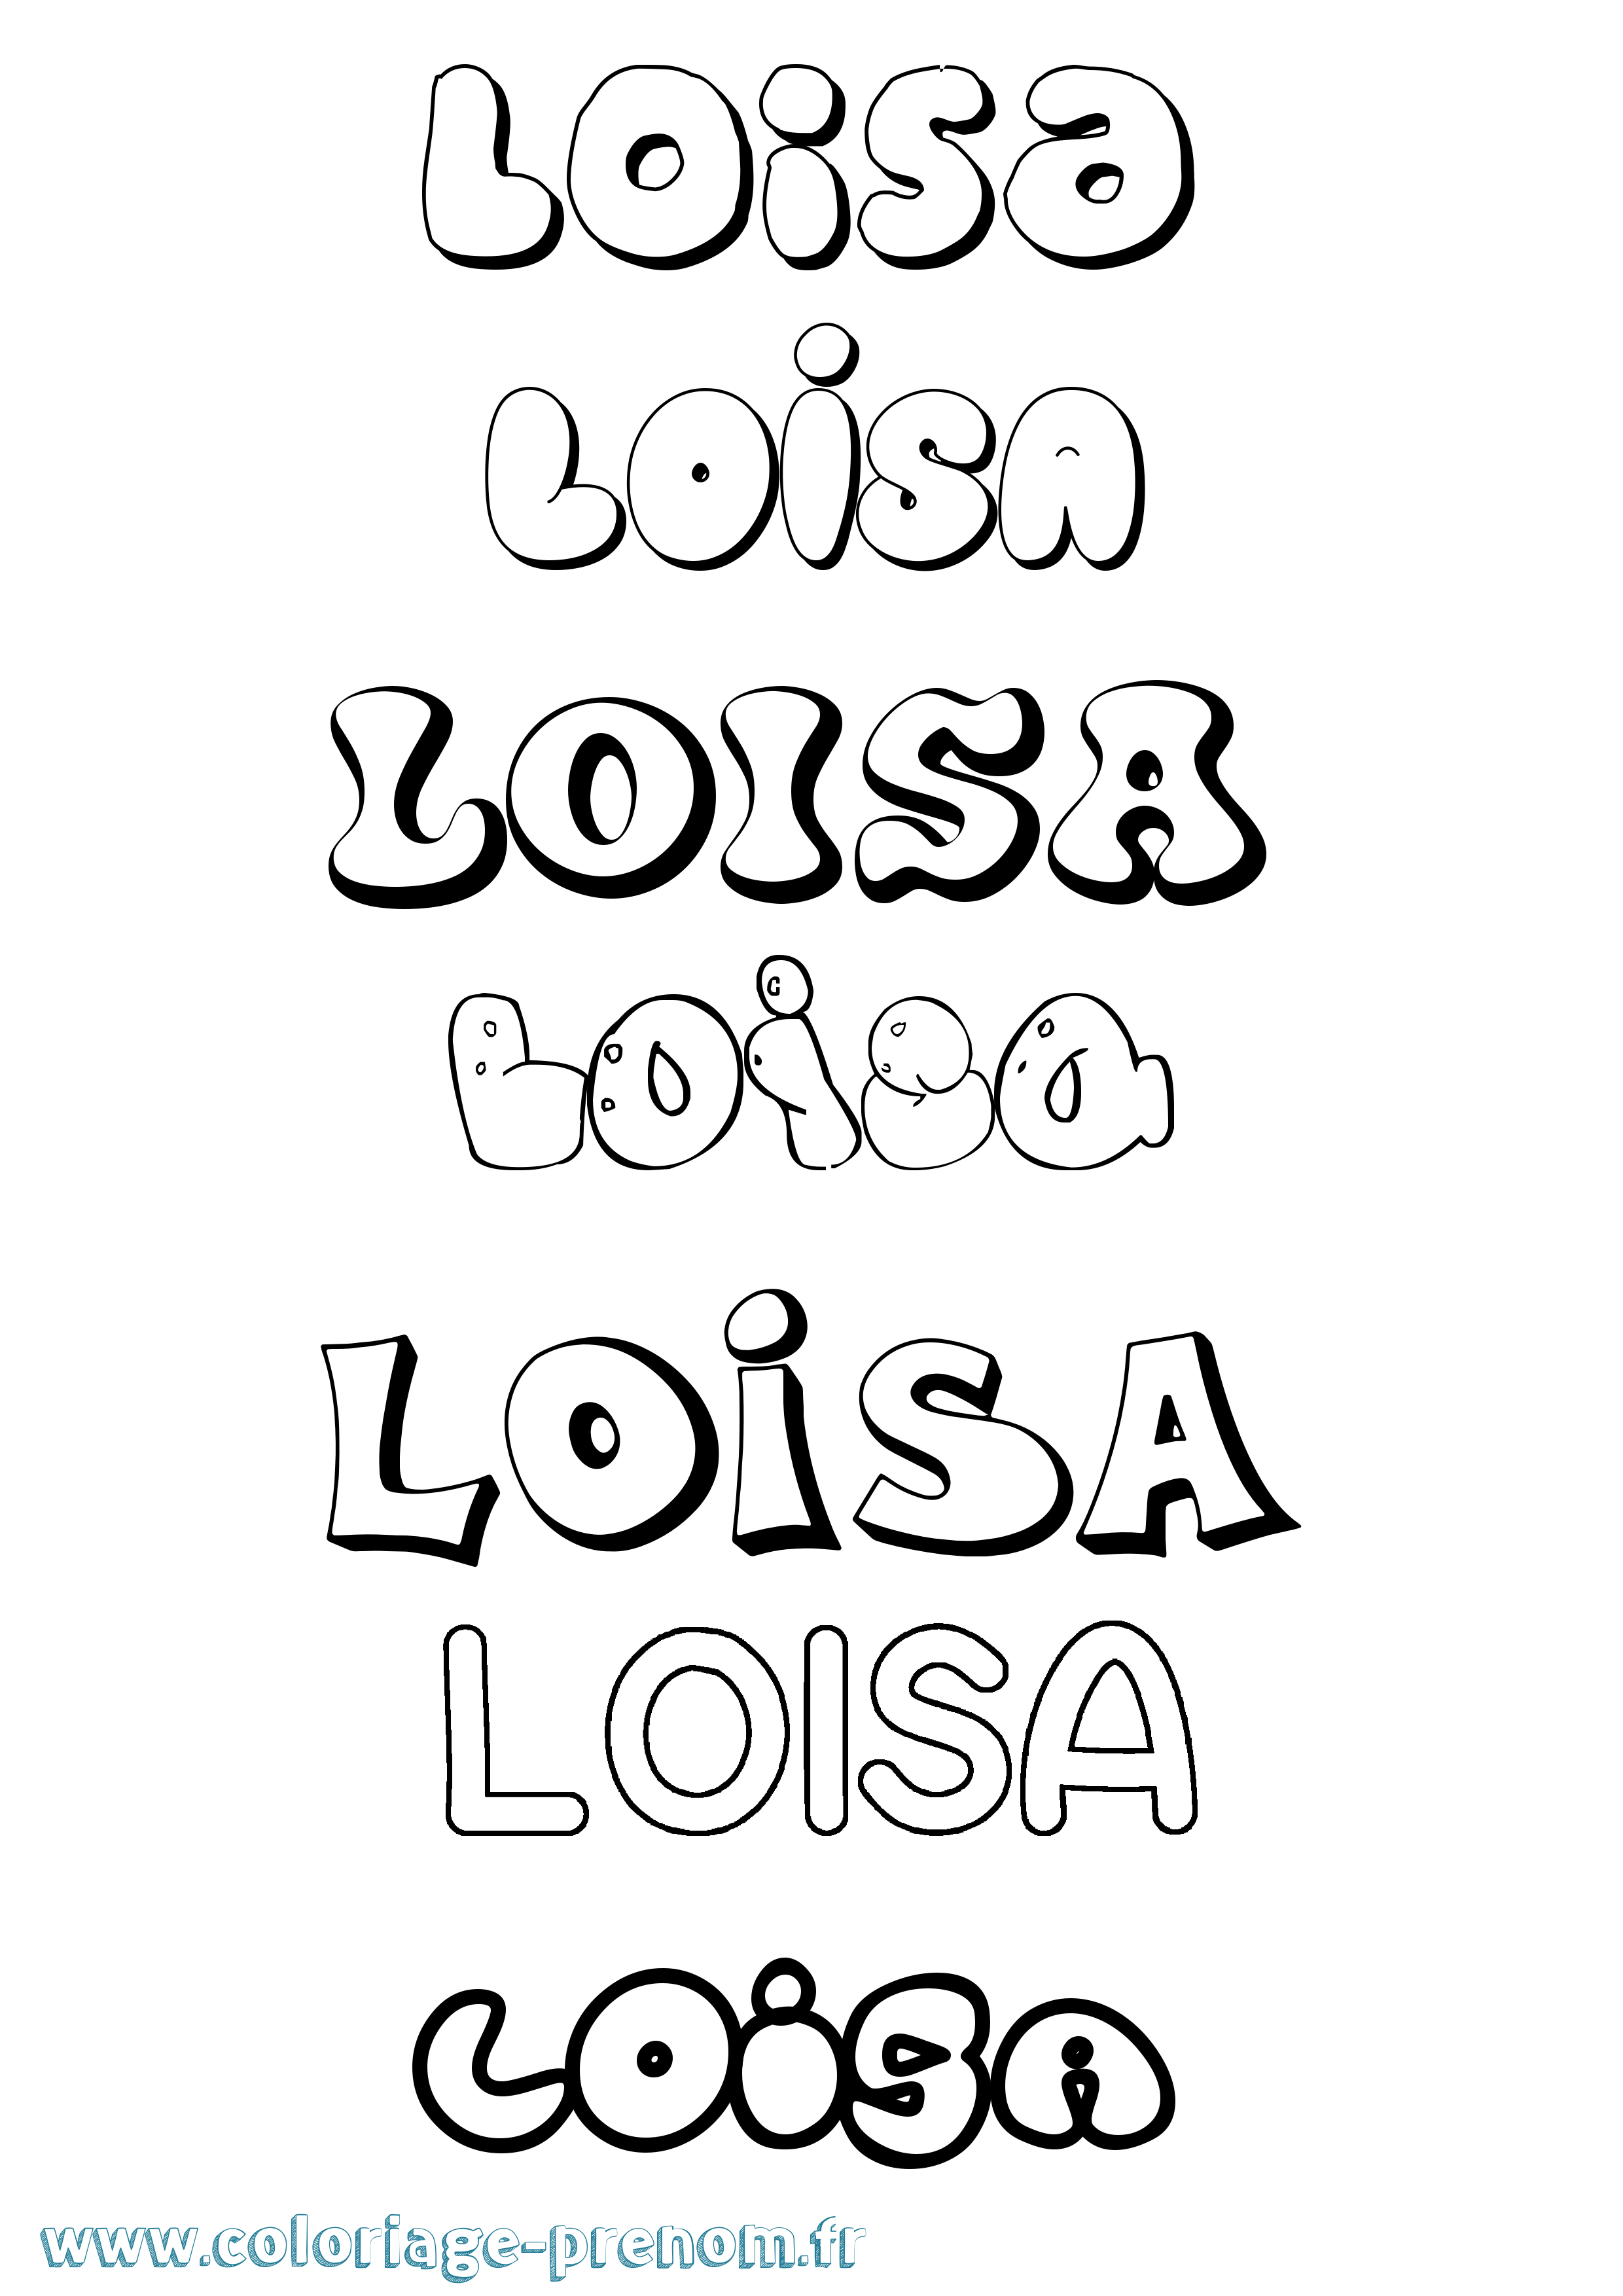 Coloriage prénom Loisa Bubble